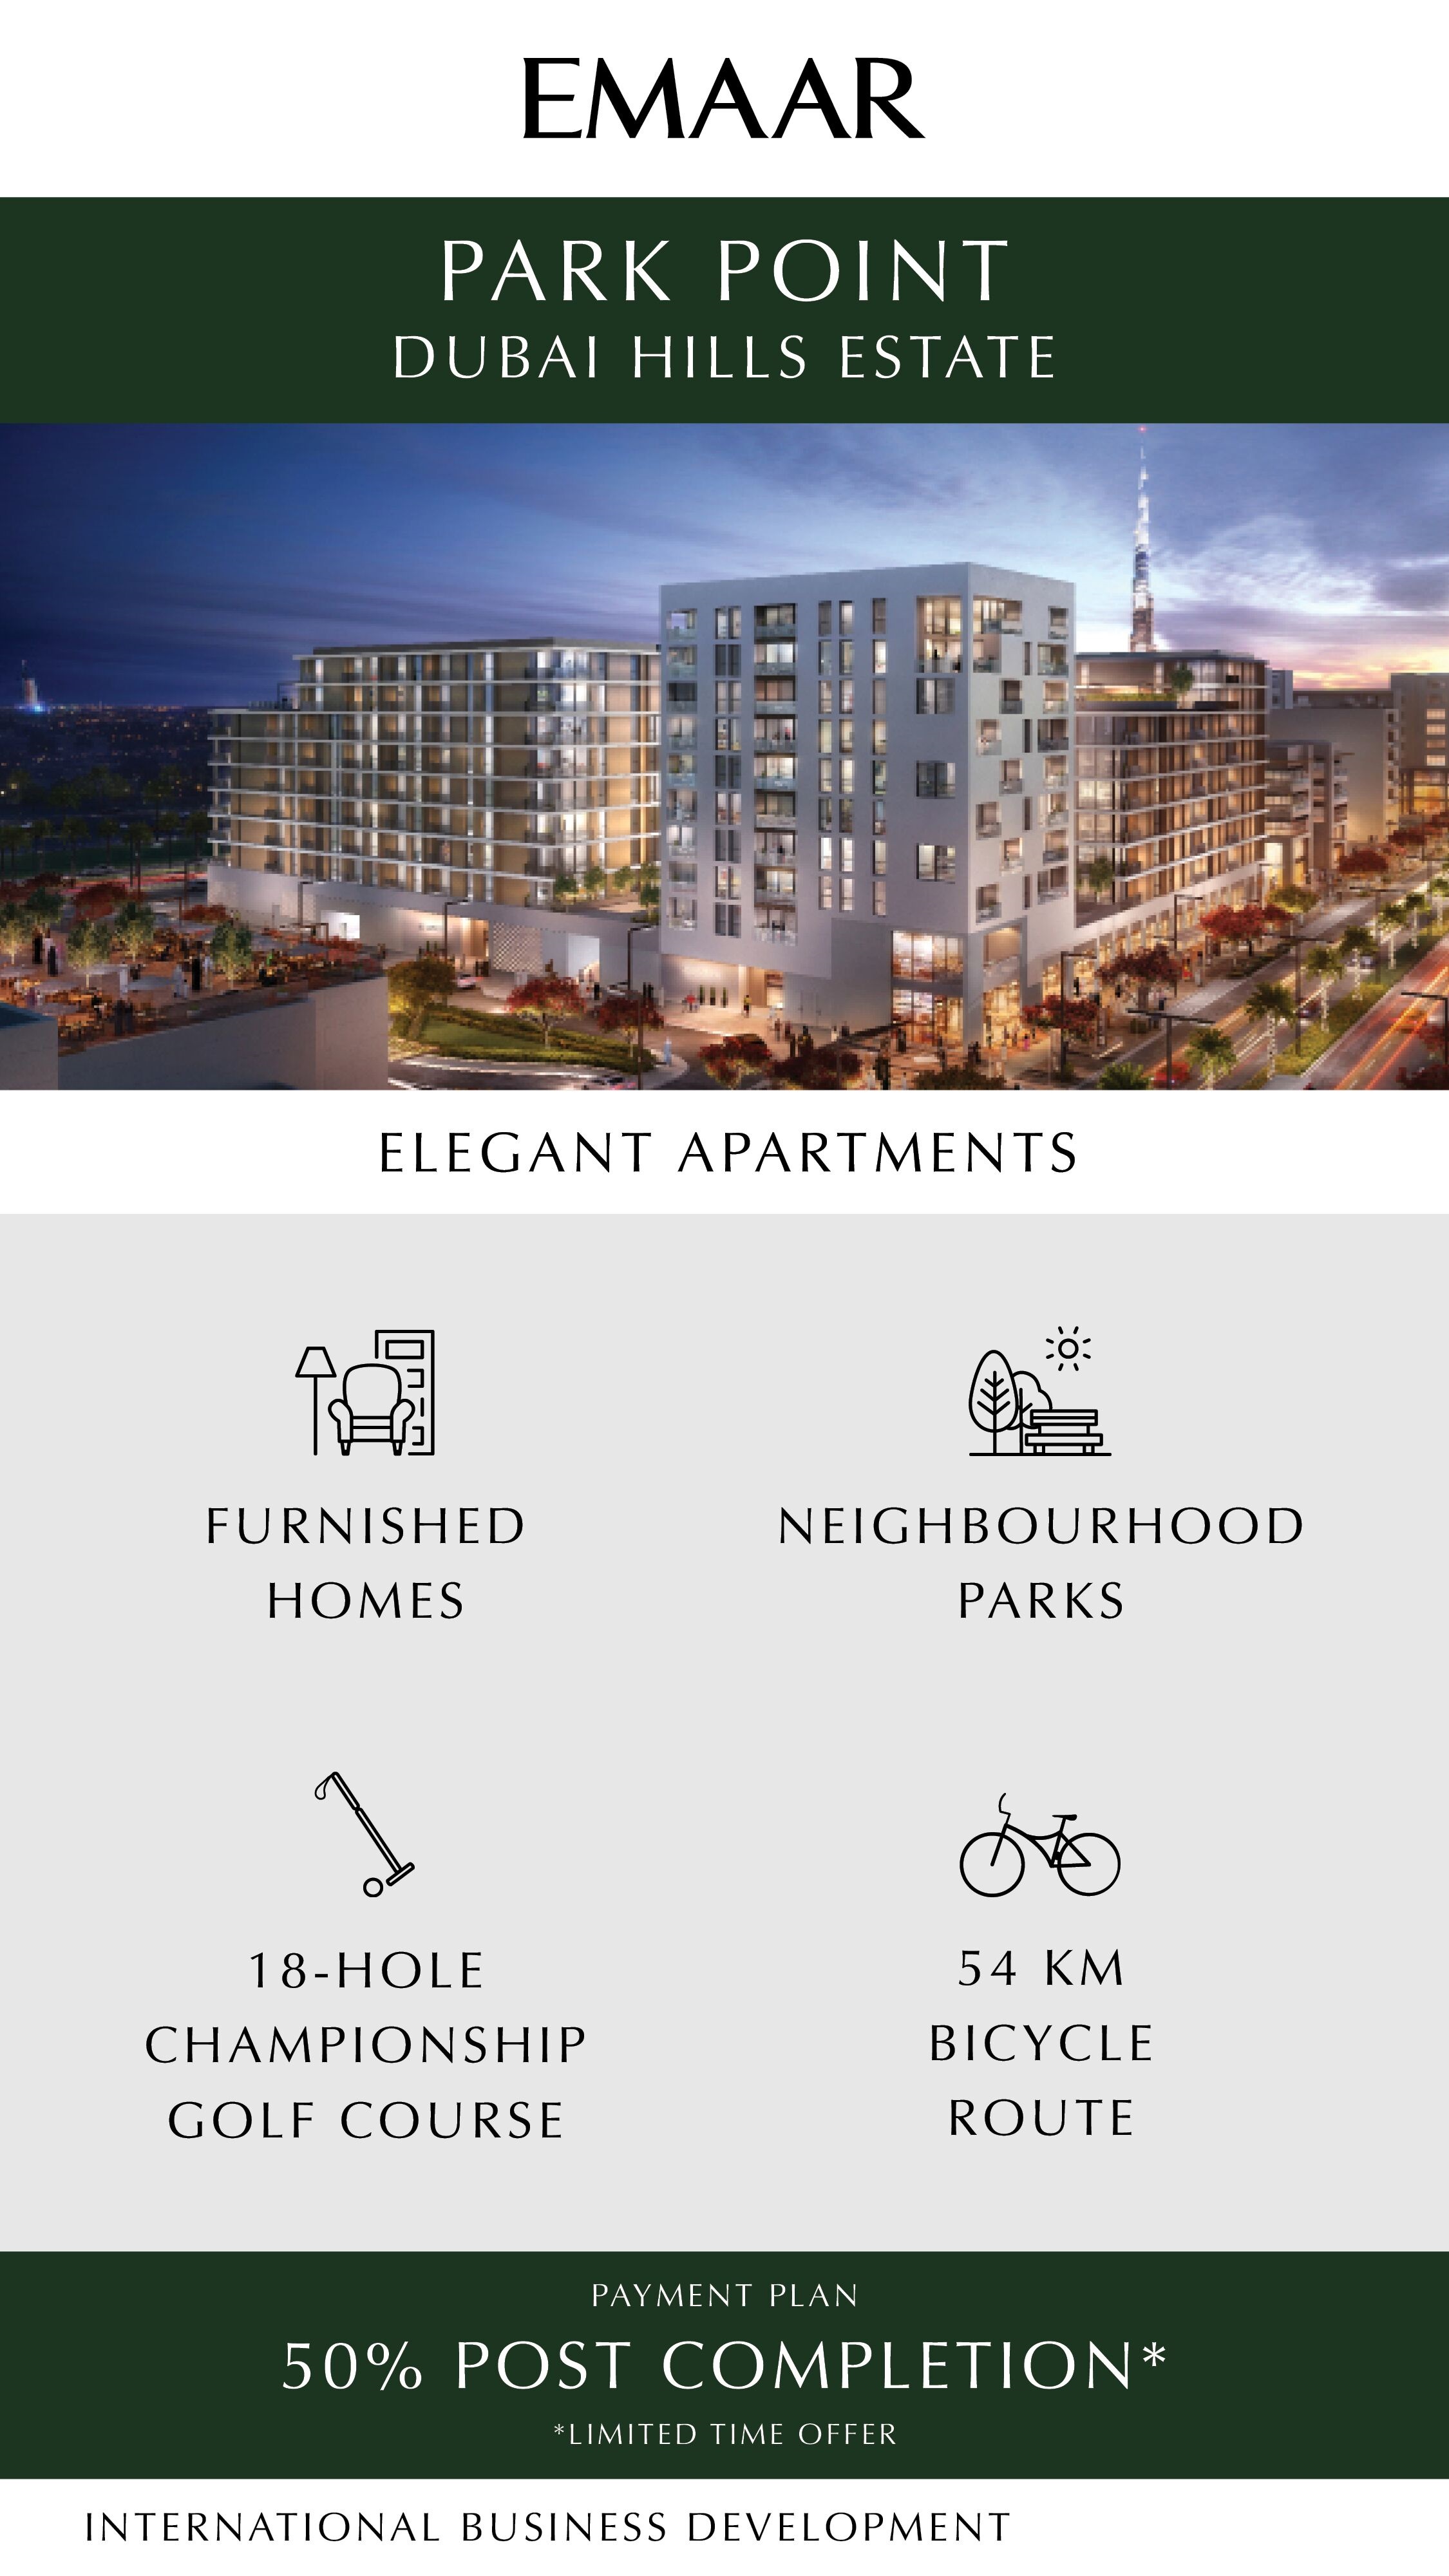 Buy Elegant Apartments at Emaar Park Point Dubai Hills Estate, UAE Update